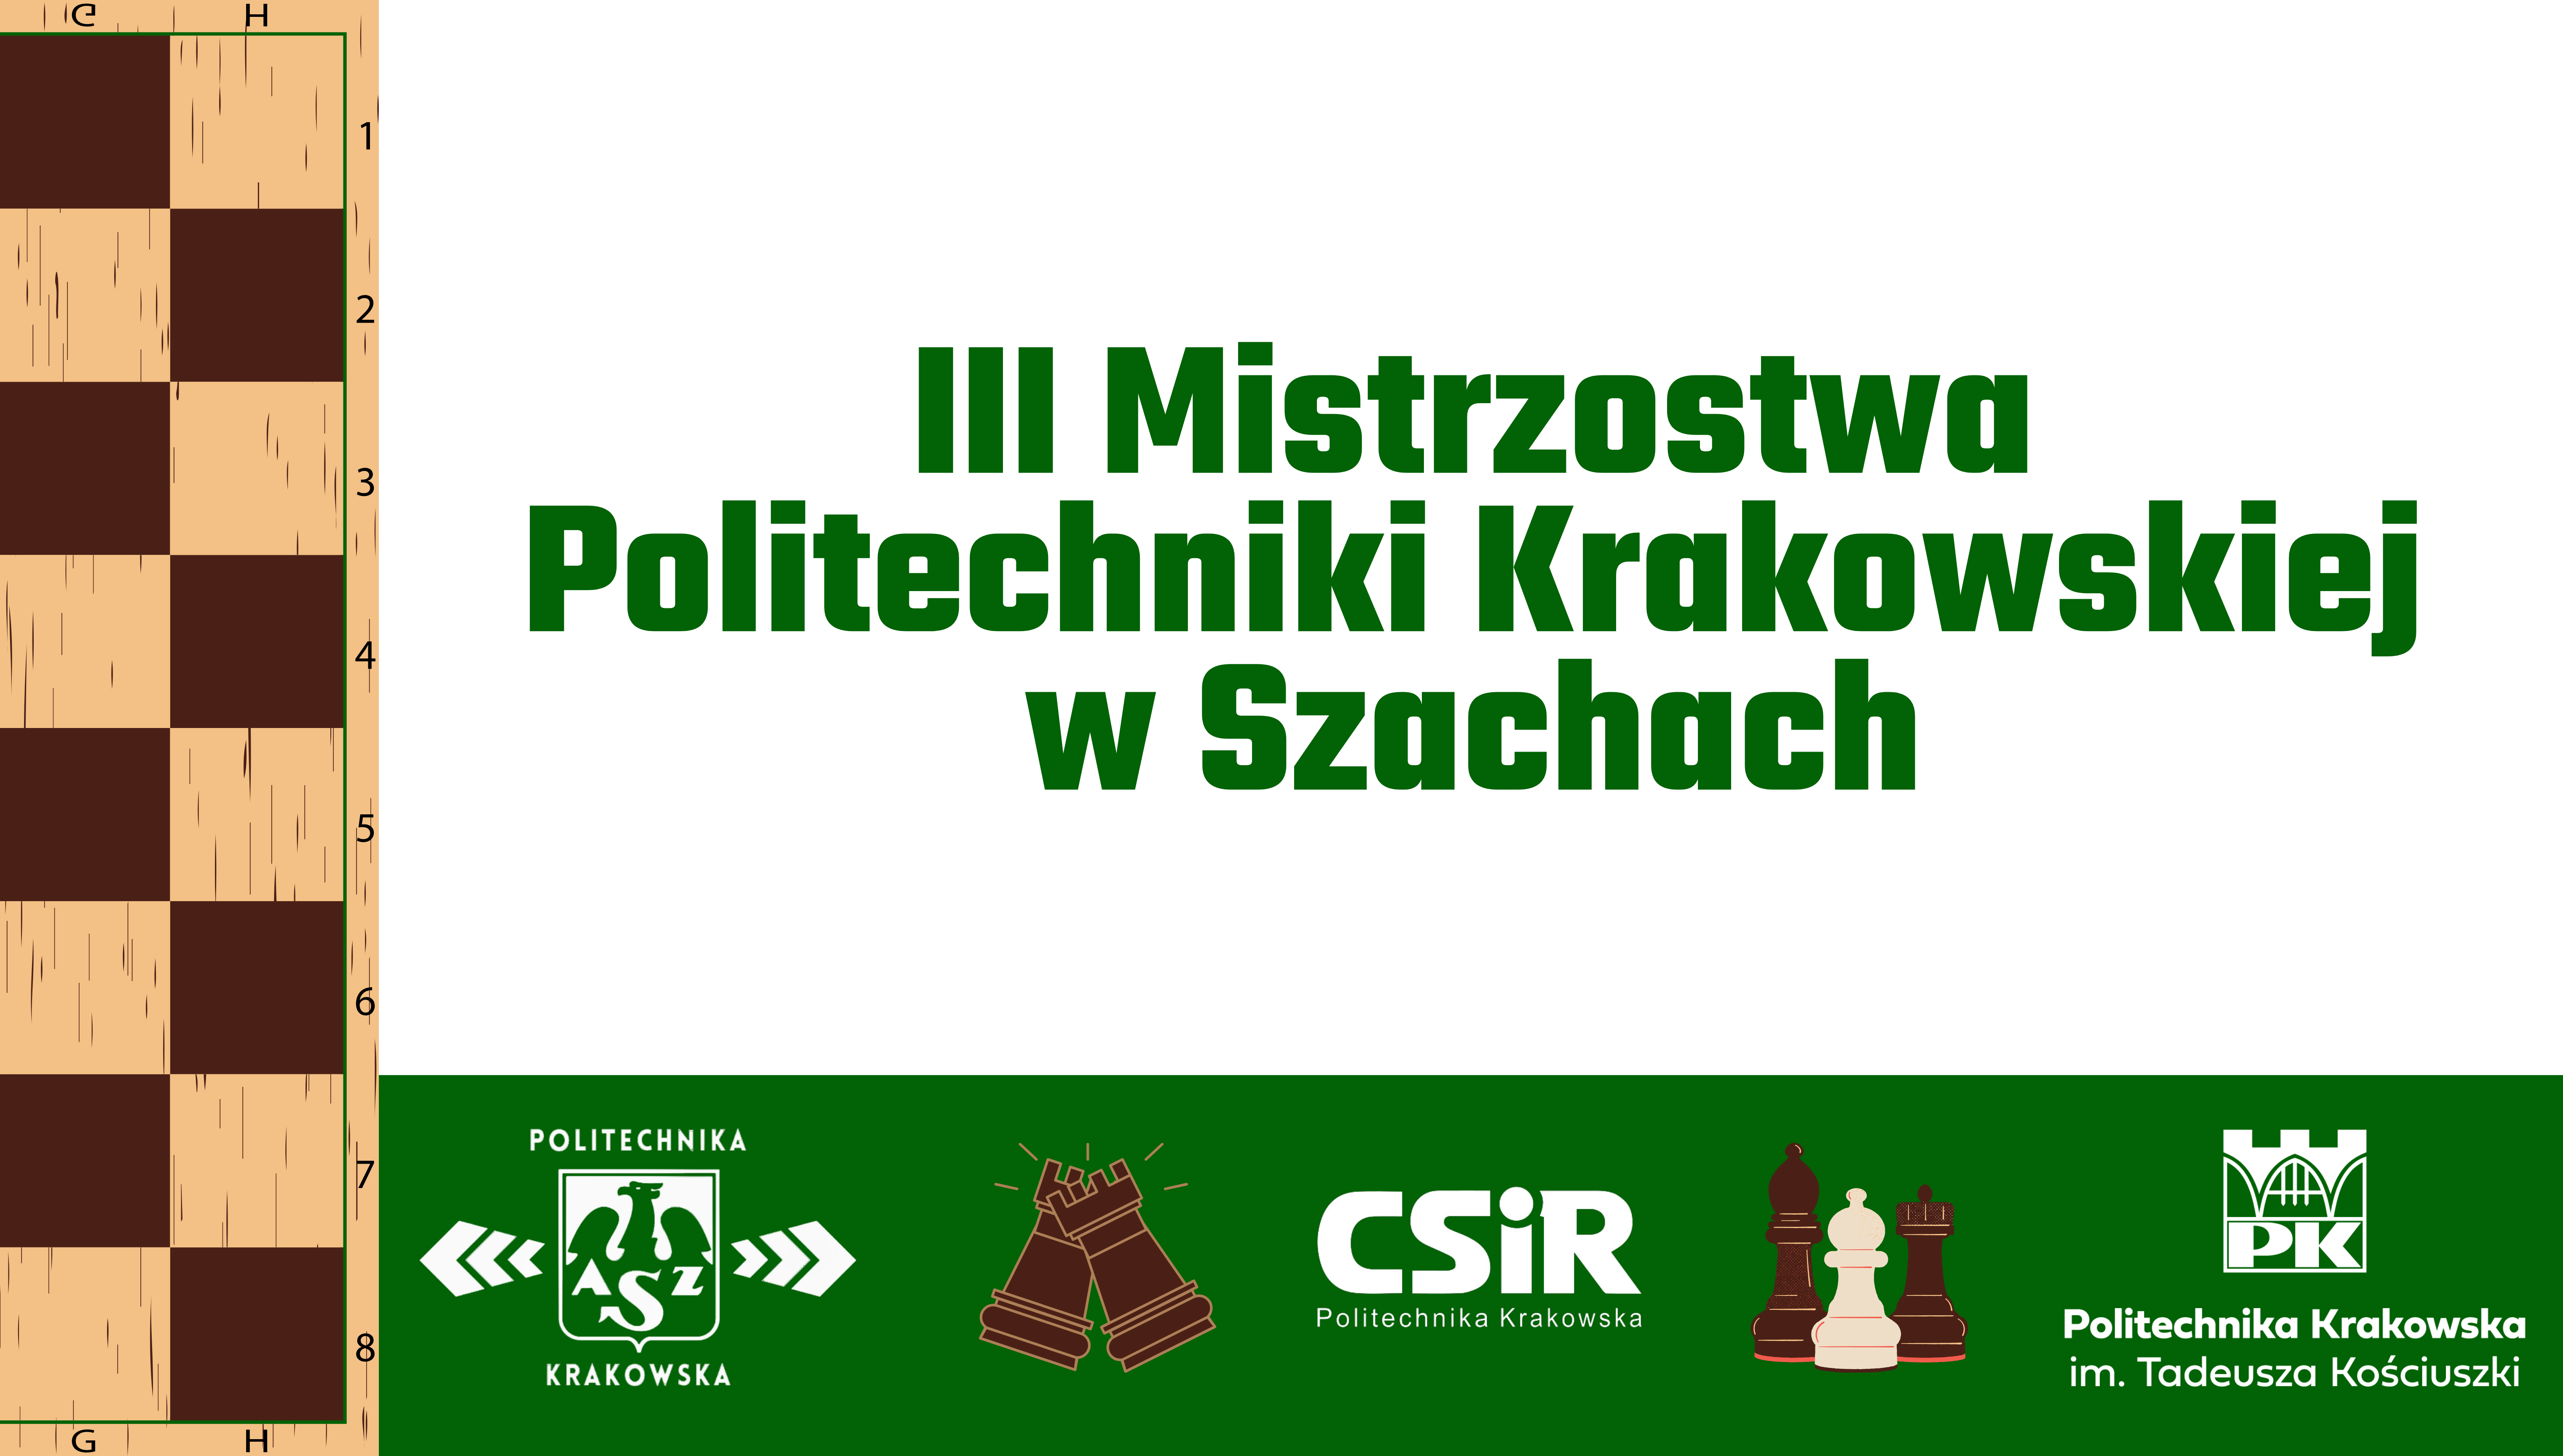 III Mistrzostwa Politechniki Krakowskiej w Szachach